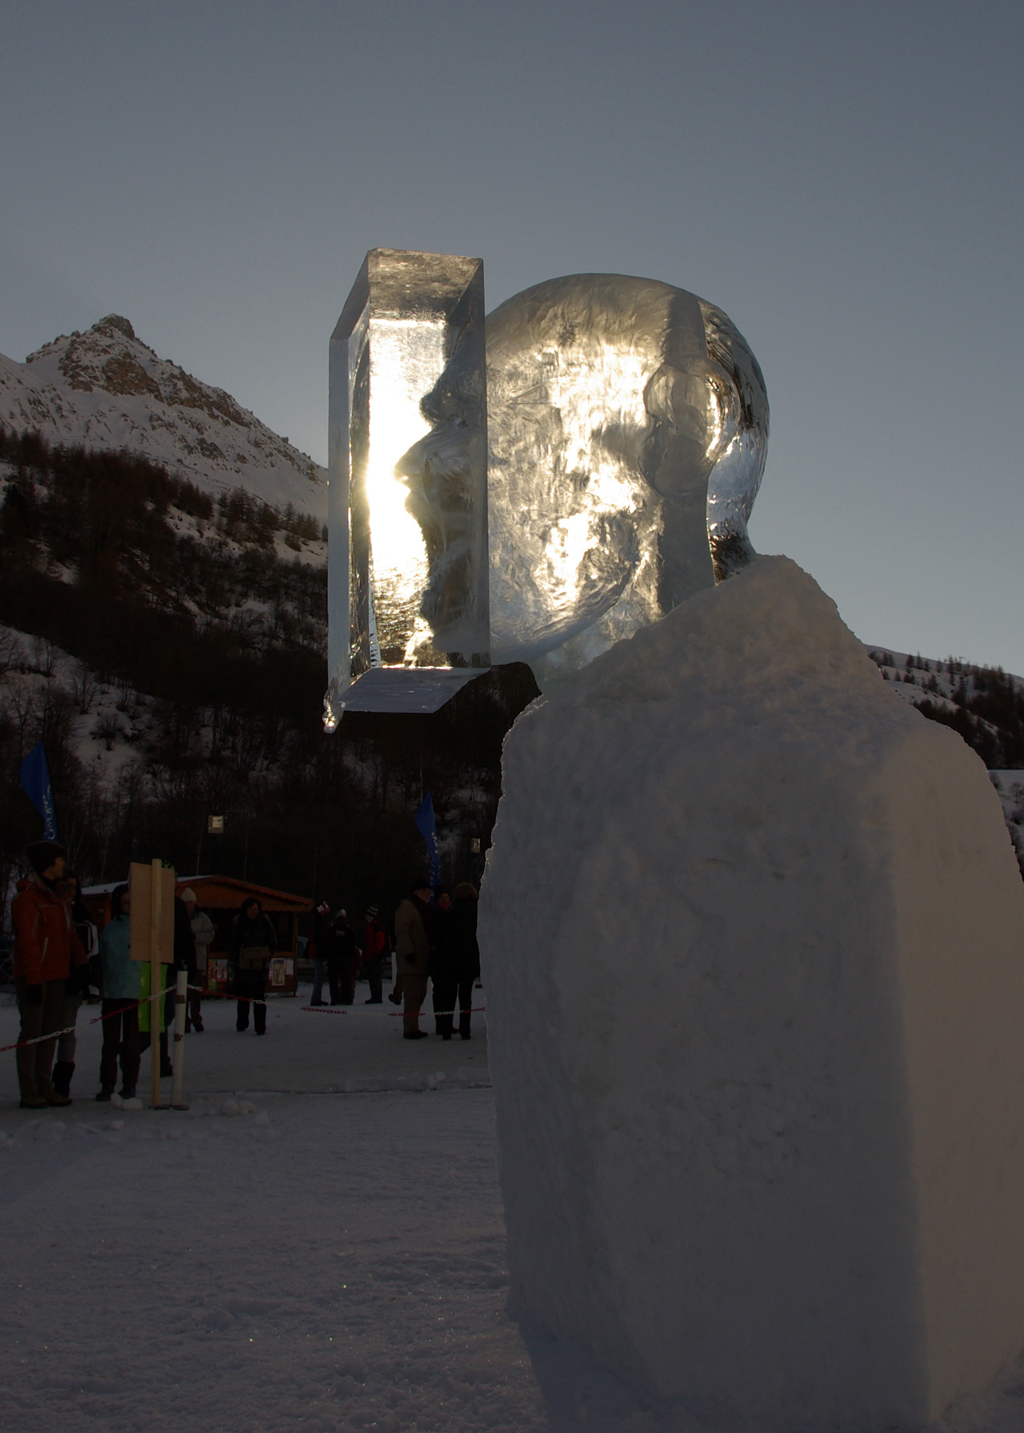 photo de la sculpture sur glace représentant une tête d'homme qui crie, son visage est pris dans un bloc de glace, mais on le voit par transparence.
L'on peut voir le visage deux ou trois fois par reflet sur les différentes faces du cube.
Ici un jeu de lumière s'opère qui donne l'impression que le son du cri reste coincé dans le cube.